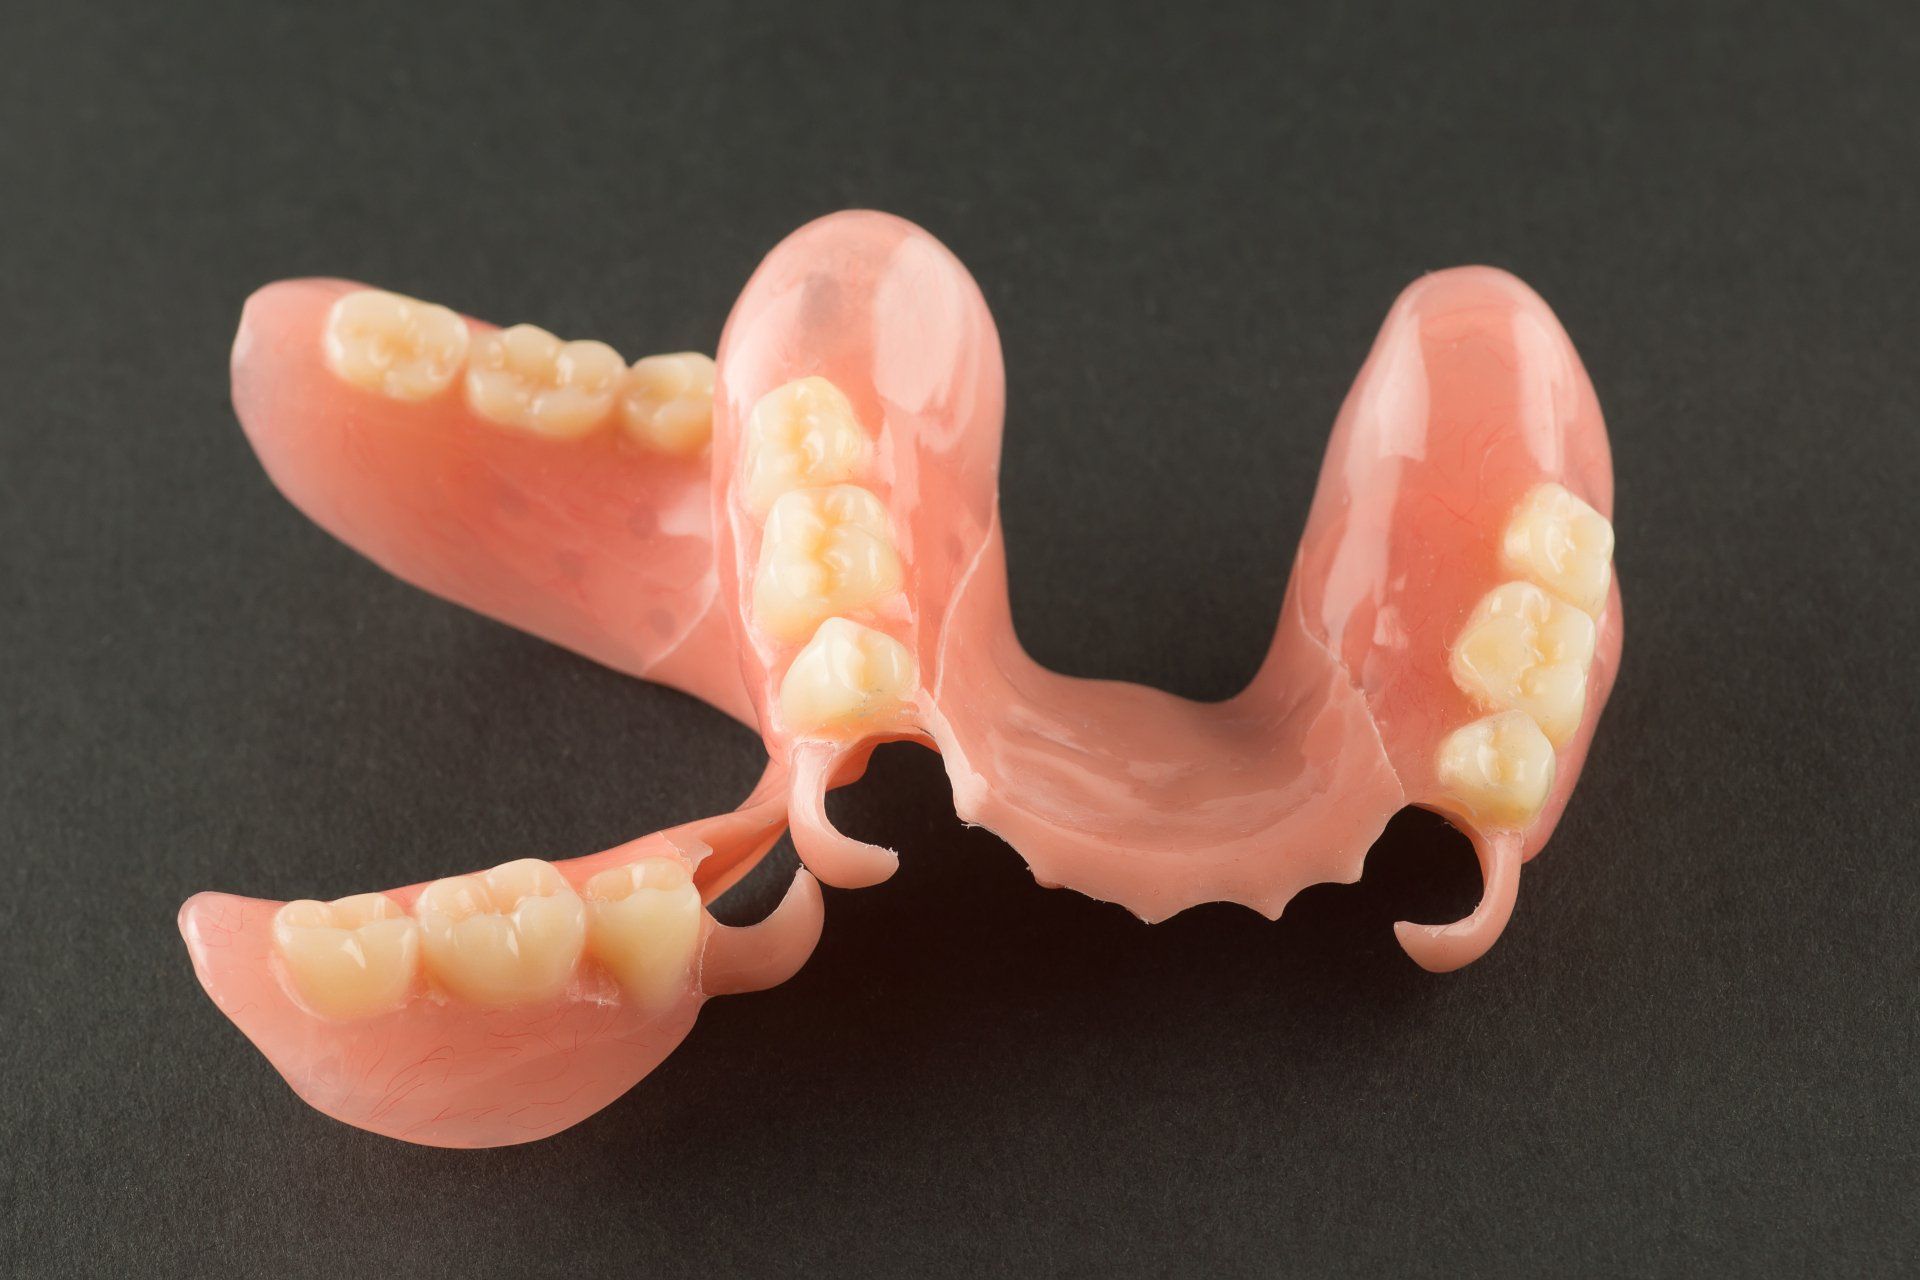 Partial acrylic dentures